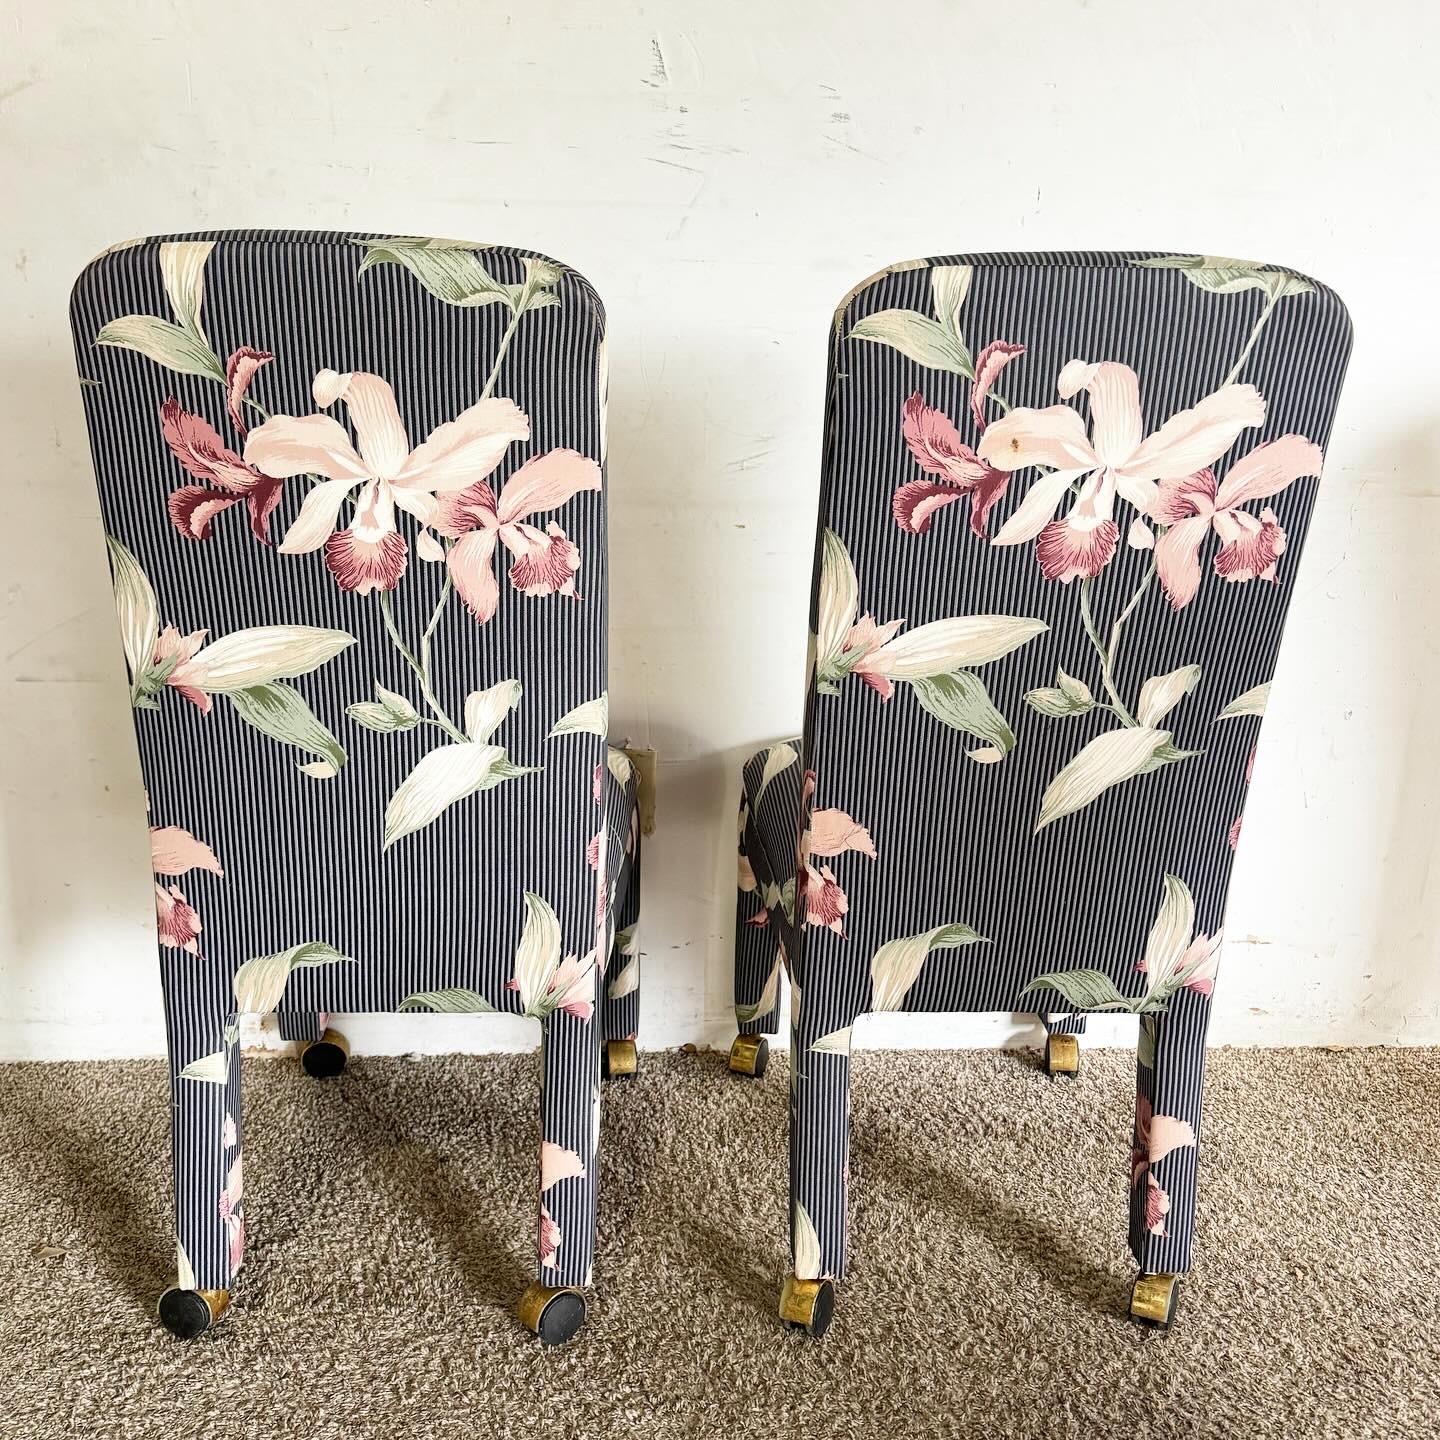 Revitalisez votre espace avec cet ensemble de quatre chaises Parsons postmodernes à rayures bleu marine et hibiscus rose sur roulettes. Ces chaises associent un design classique à rayures bleu marine à des accents d'hibiscus rose vibrant, créant